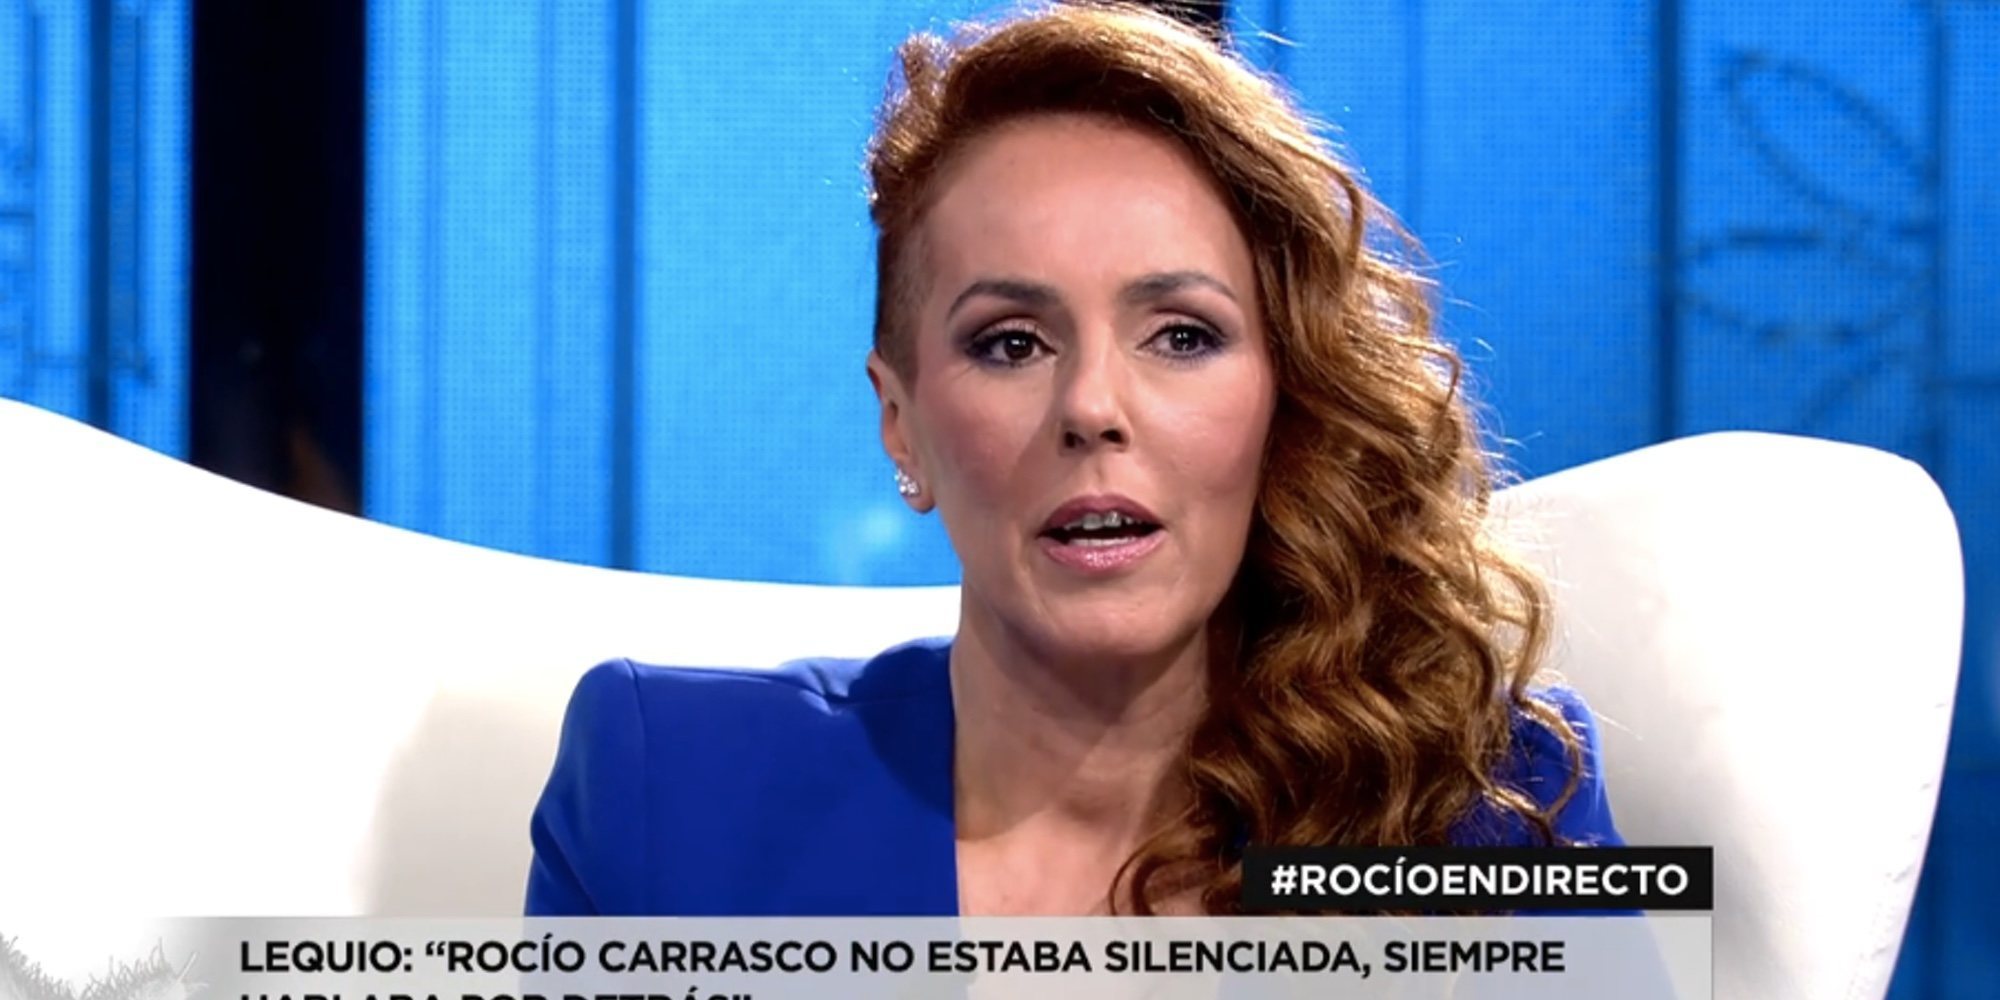 Alessandro Lequio responde a Rocío Carrasco: "Yo nunca he sido denunciado por maltrato"